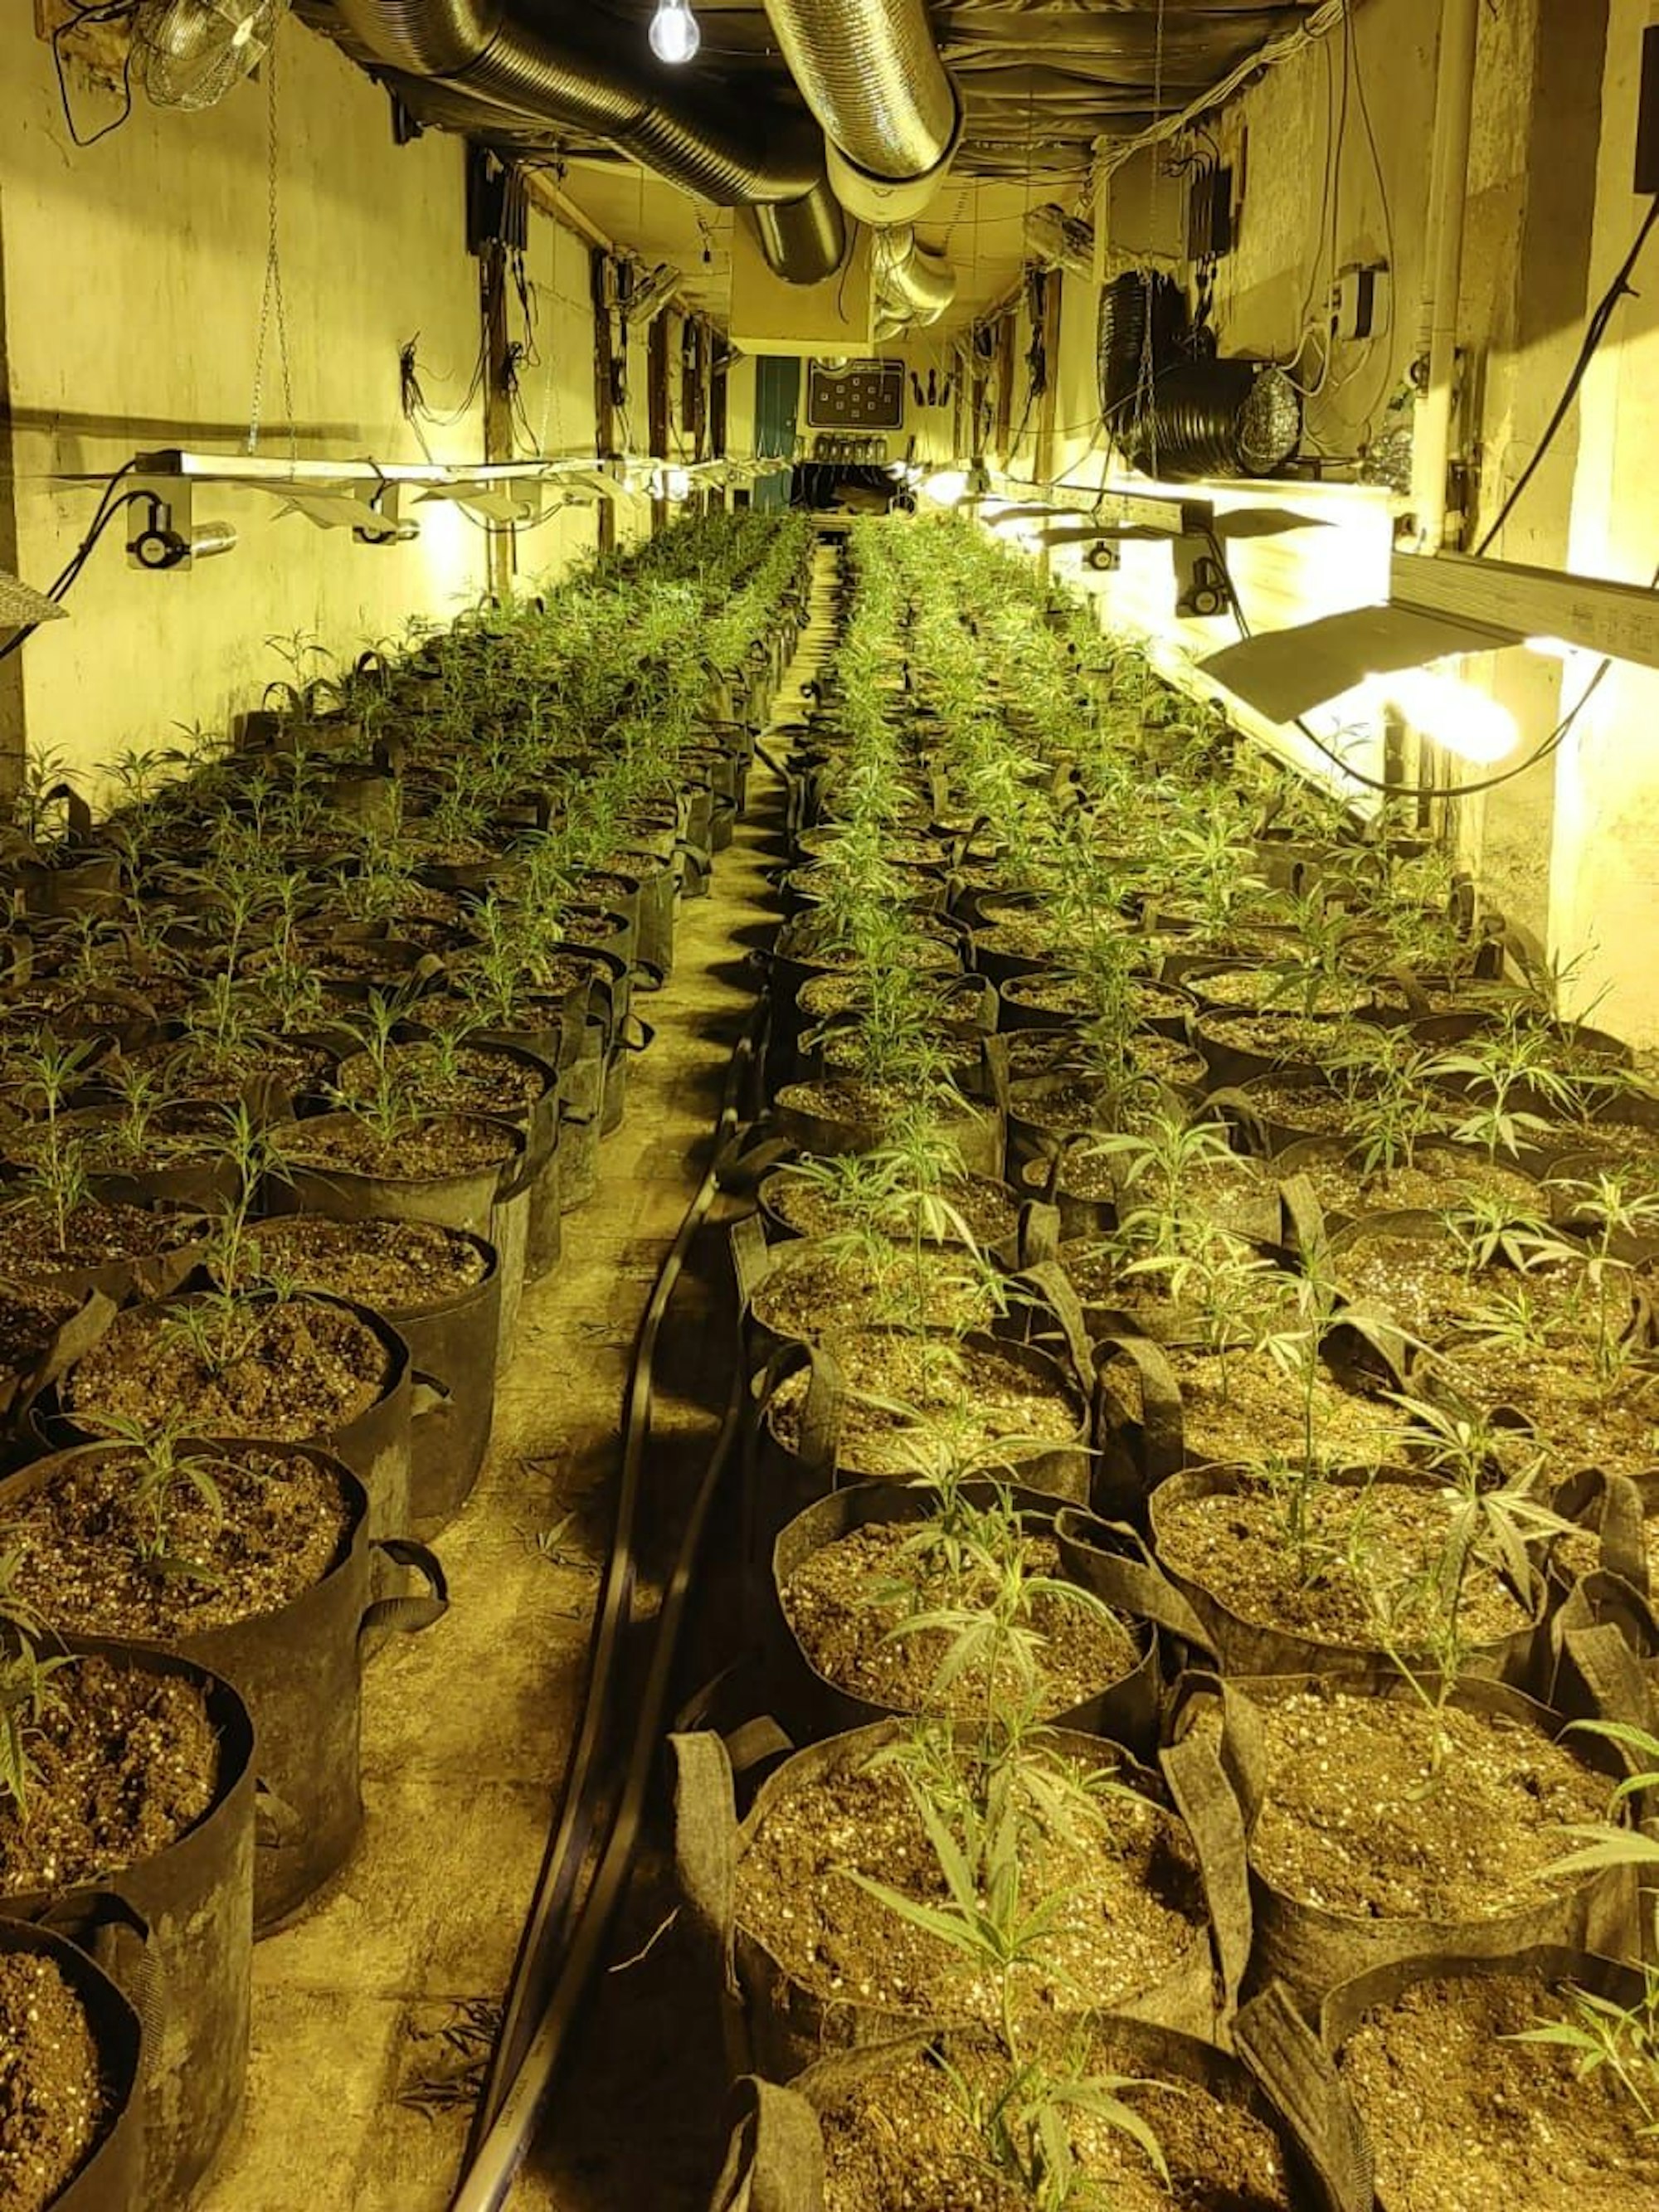 Eine Bundeskegelbahn im Keller des Hauses wurde zur Anzucht der Cannabisplantagen umgebaut.